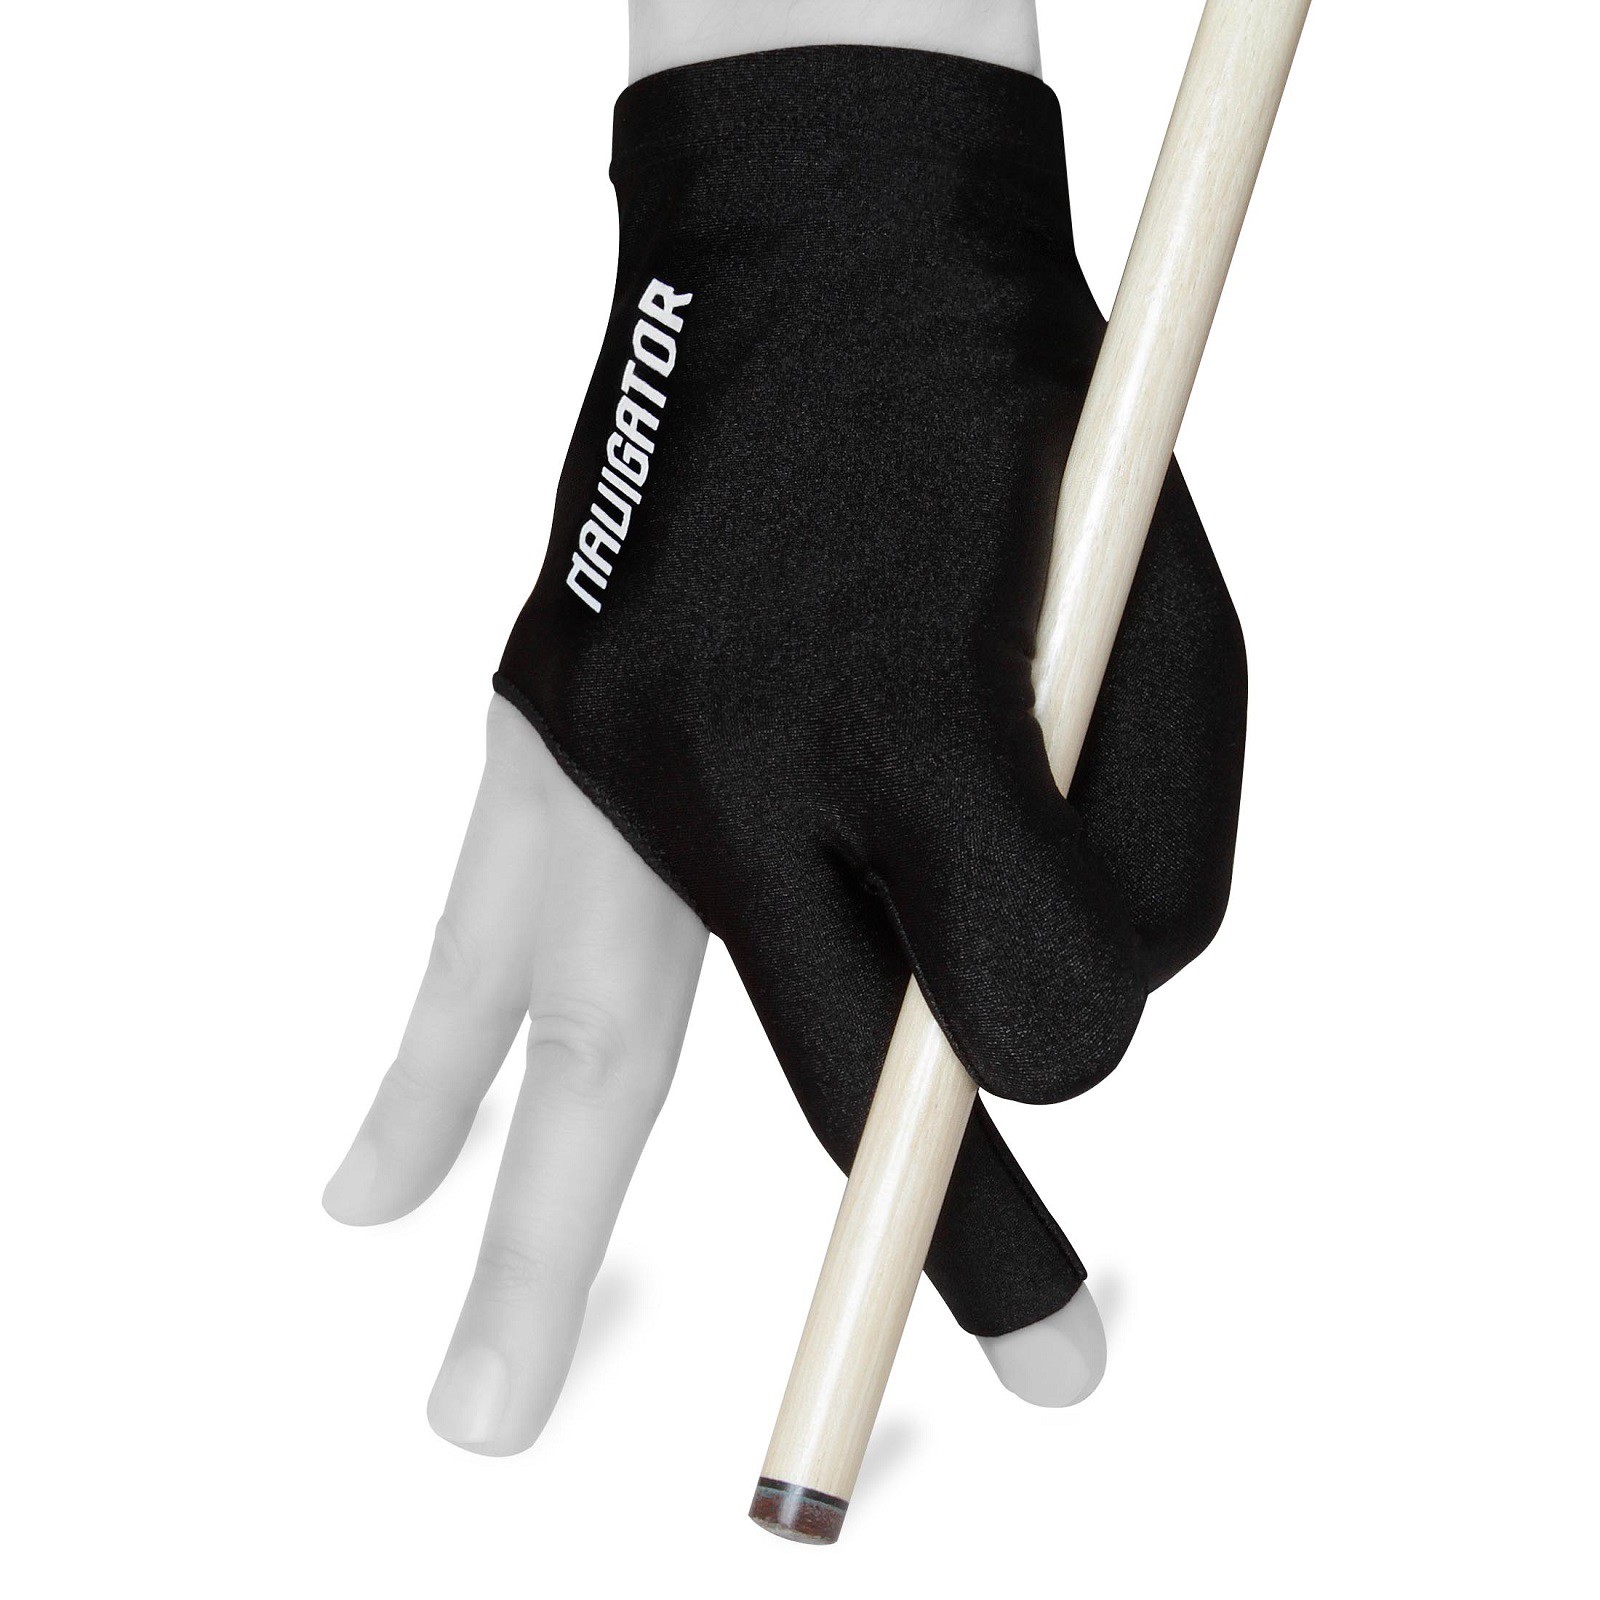 Перчатка для бильярда Navigator Glove Open черная правая 1шт.